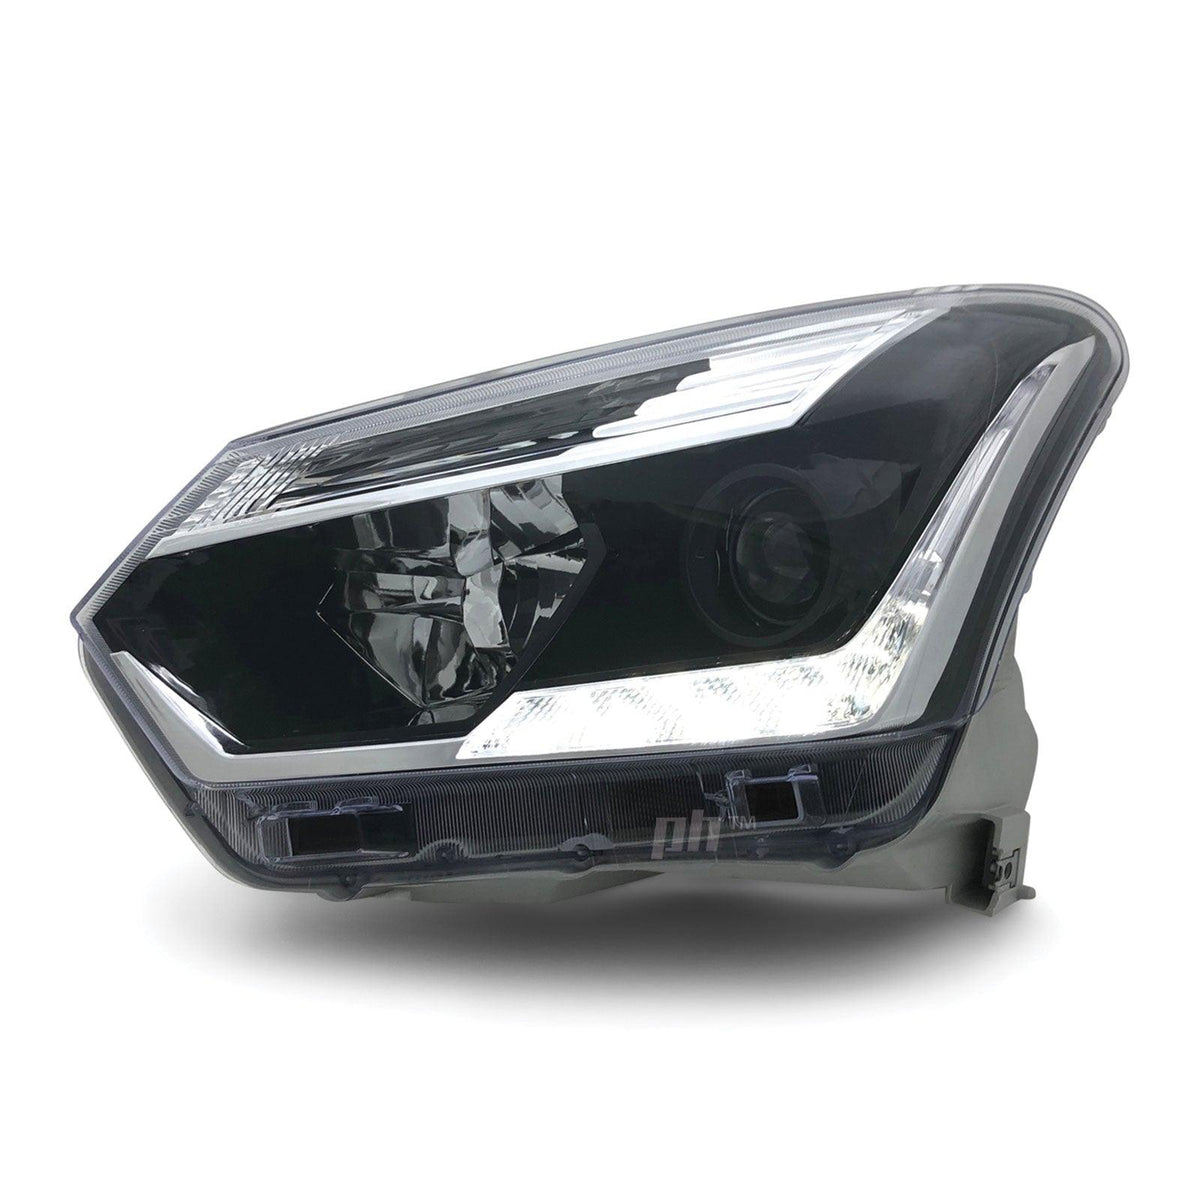 Headlights Black Projector LED DRL PAIR Fits Isuzu DMAX 2017 - 2020 - 4X4OC™